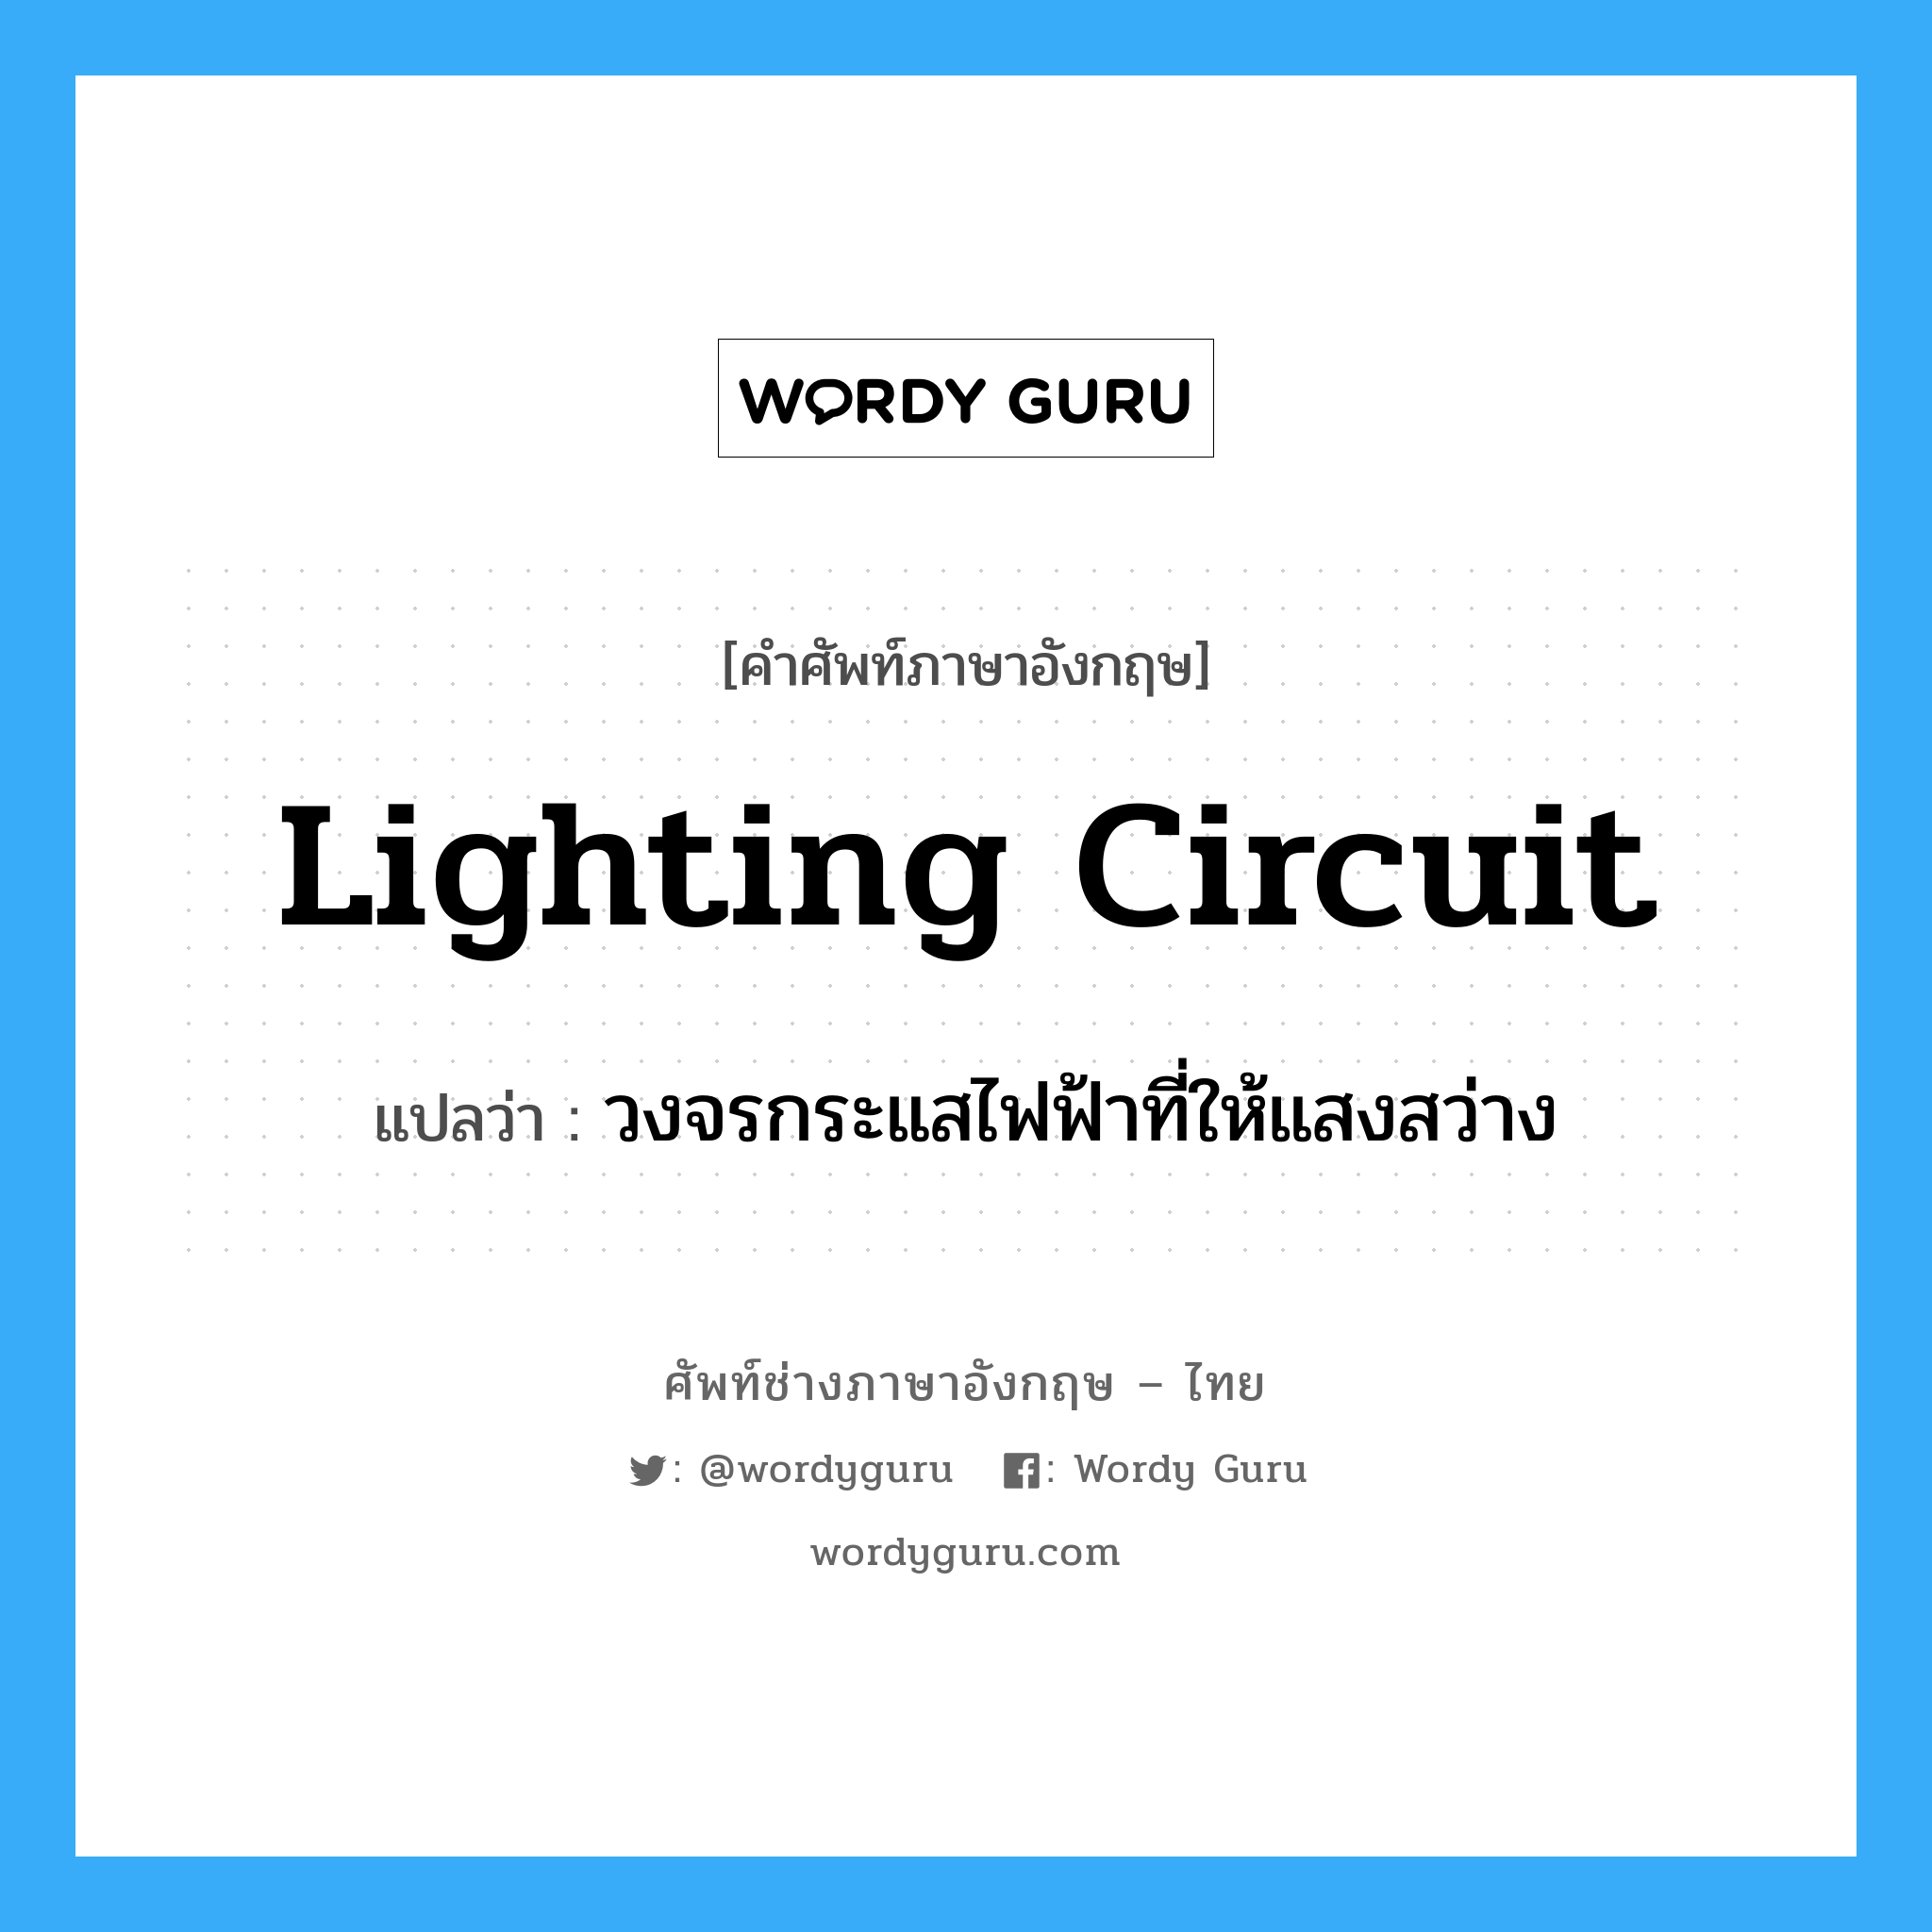 lighting circuit แปลว่า?, คำศัพท์ช่างภาษาอังกฤษ - ไทย lighting circuit คำศัพท์ภาษาอังกฤษ lighting circuit แปลว่า วงจรกระแสไฟฟ้าที่ให้แสงสว่าง